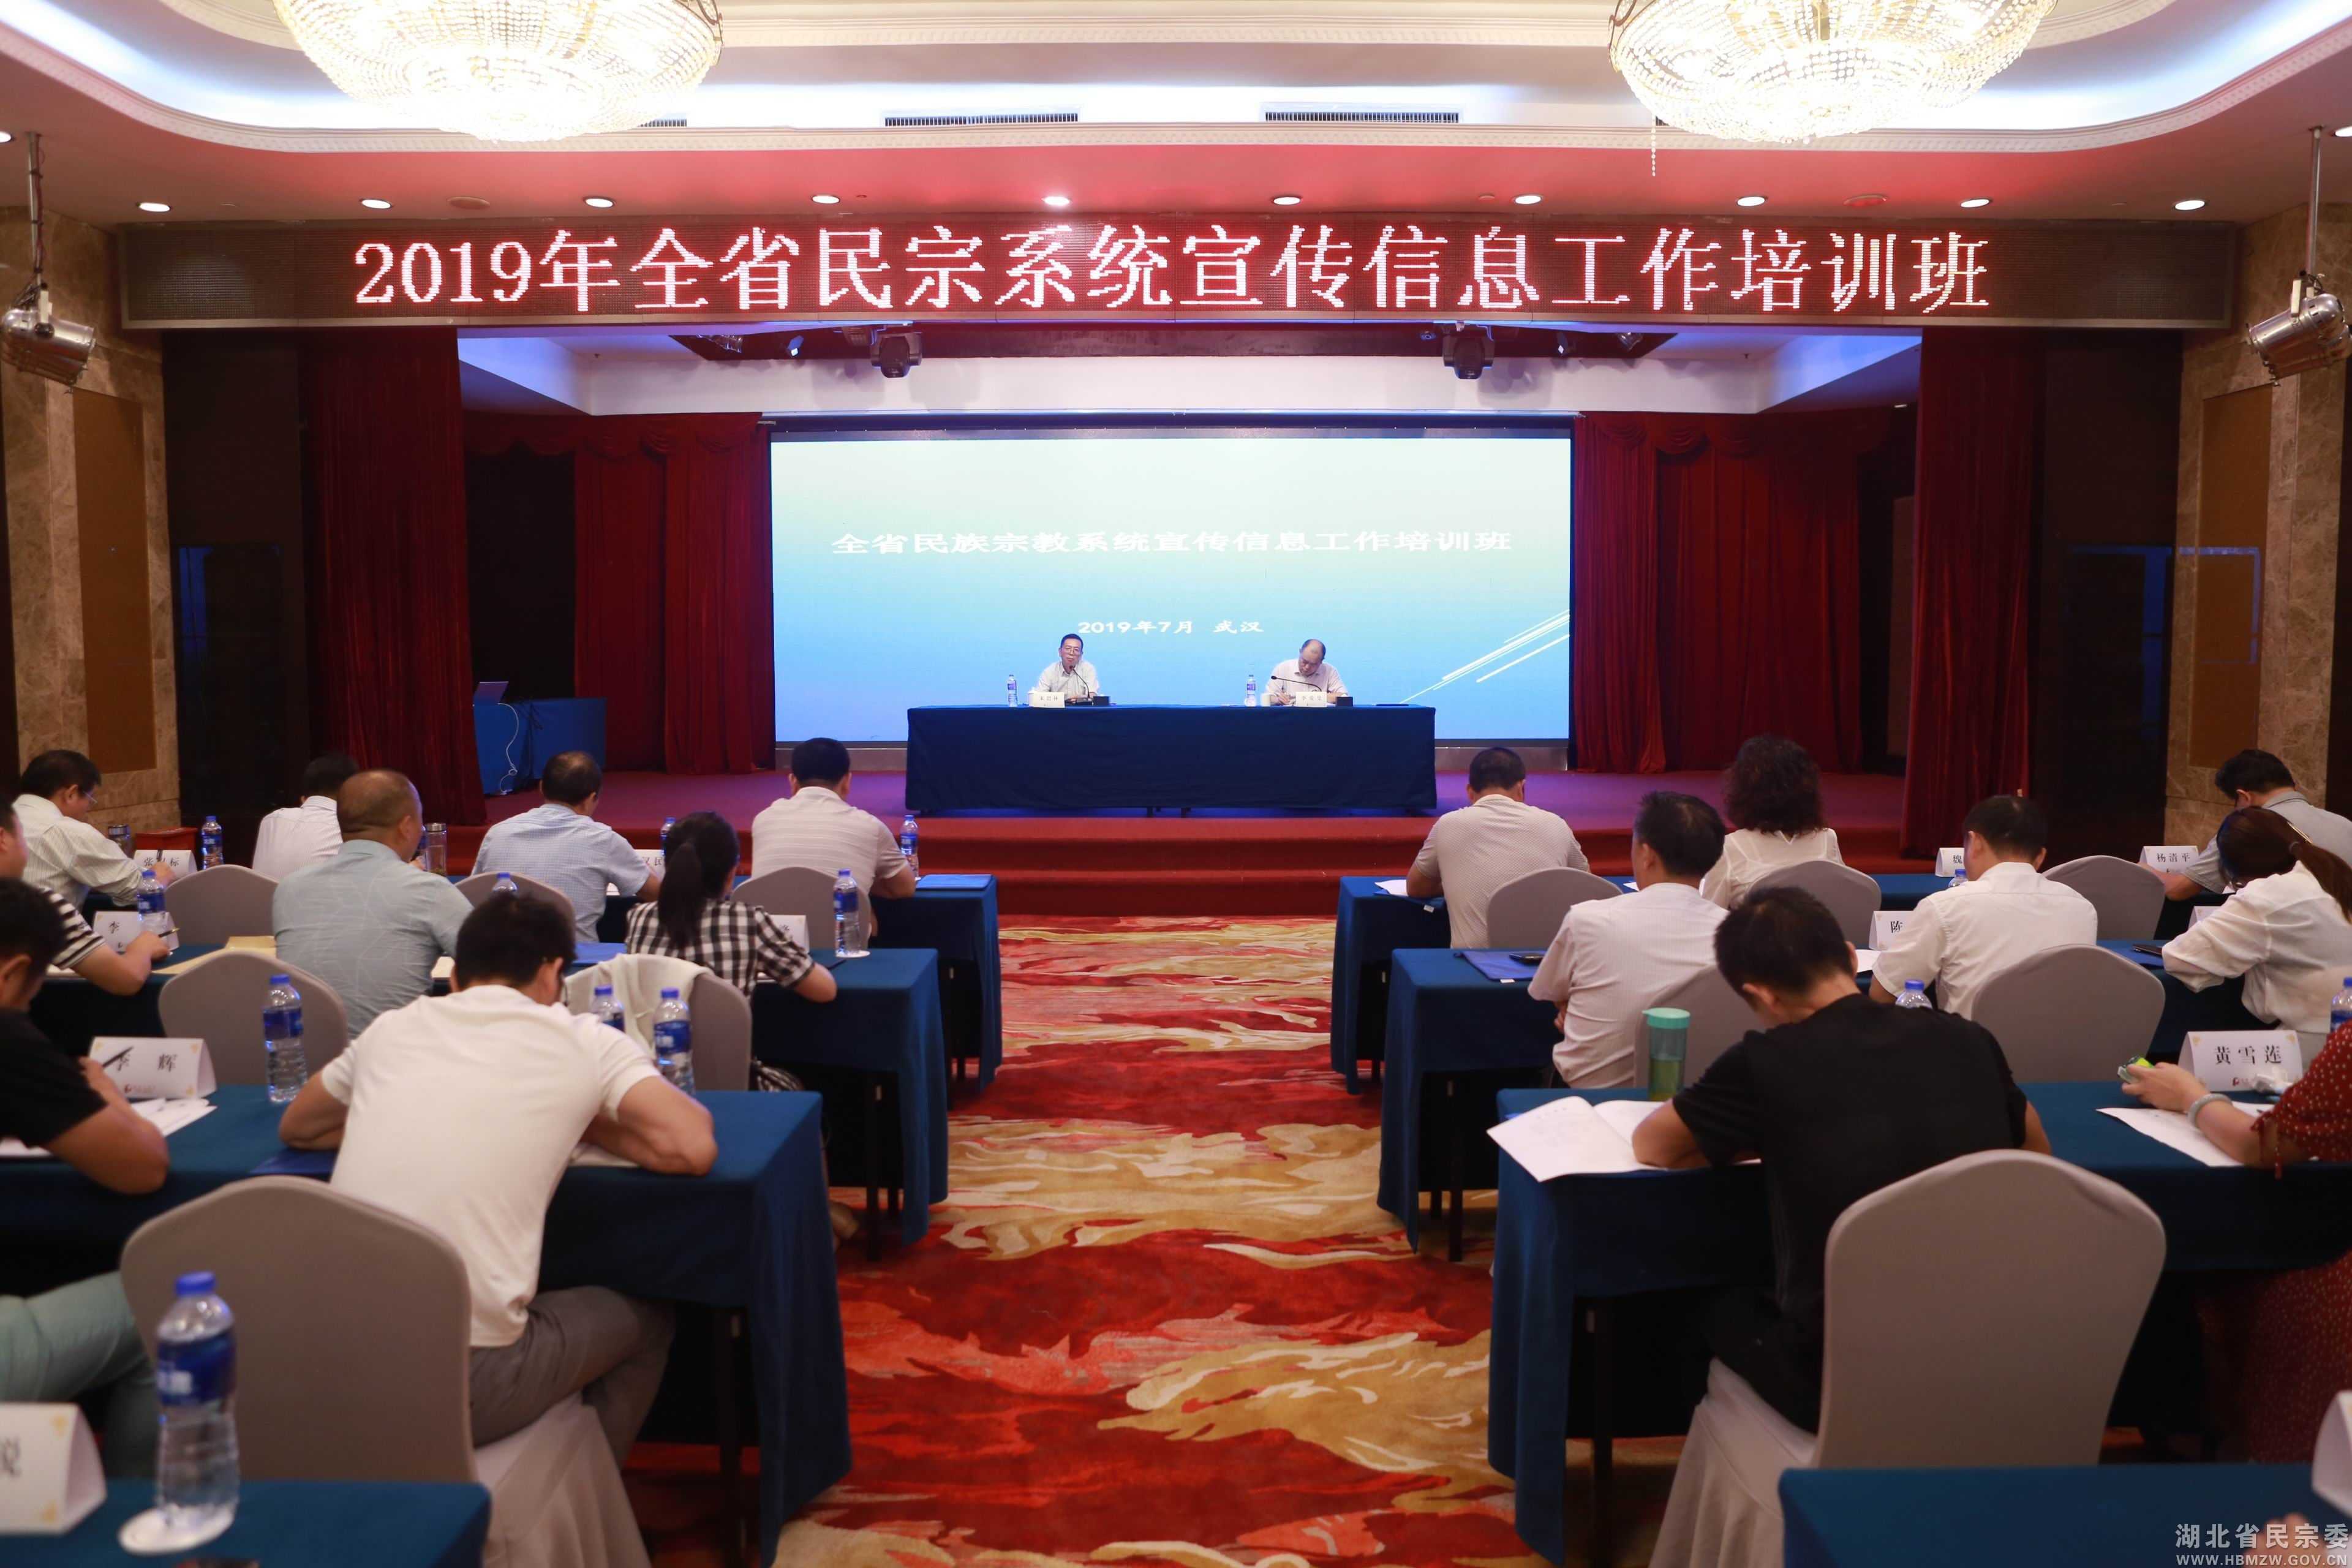 湖北省民族宗教系统宣传信息工作培训班在汉举办